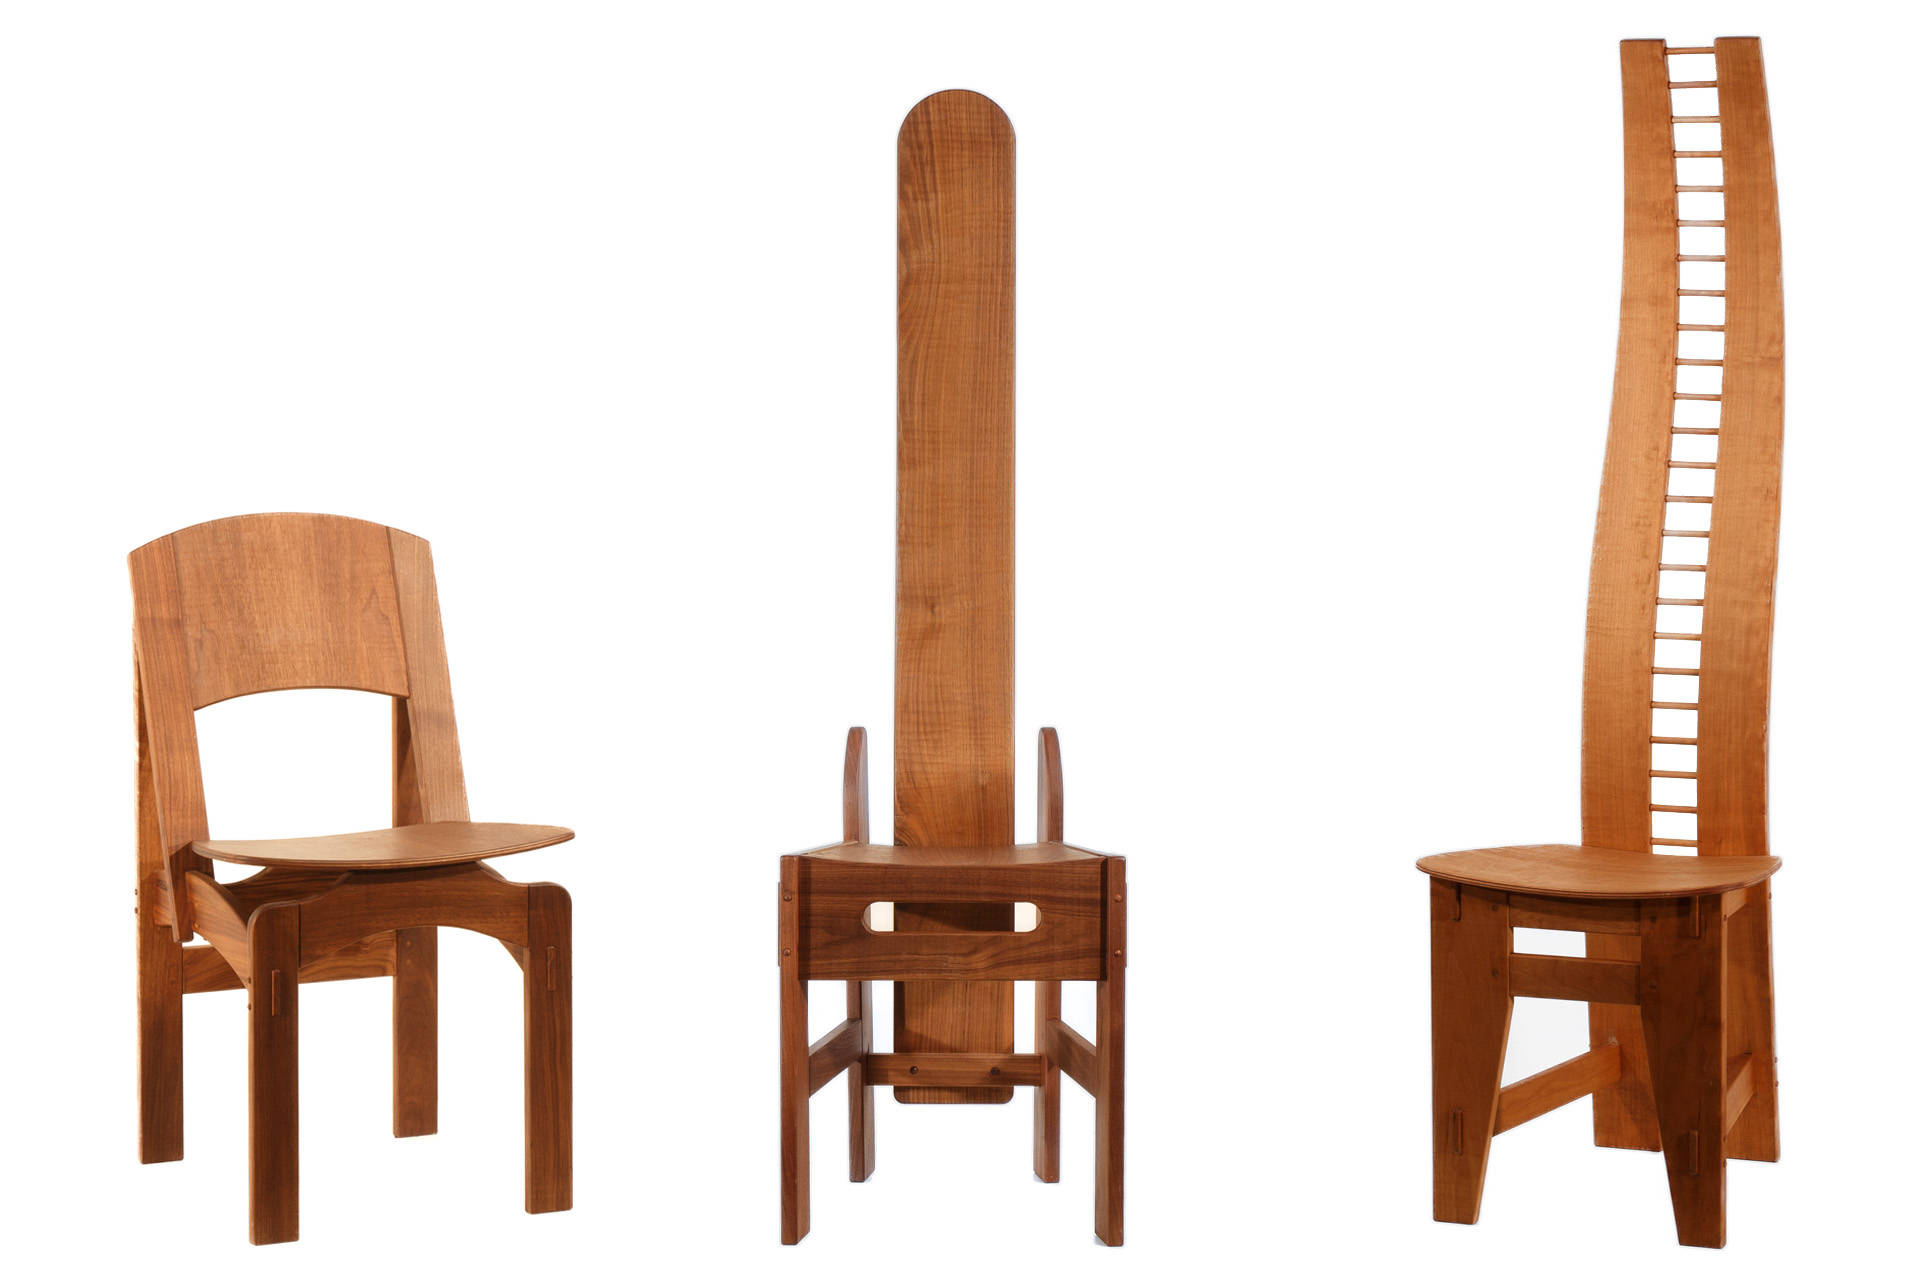 A.M. Progetto Legno di Antonio Comini - Progettazione e Realizzazione di Mobili in legno massello - Le sedie